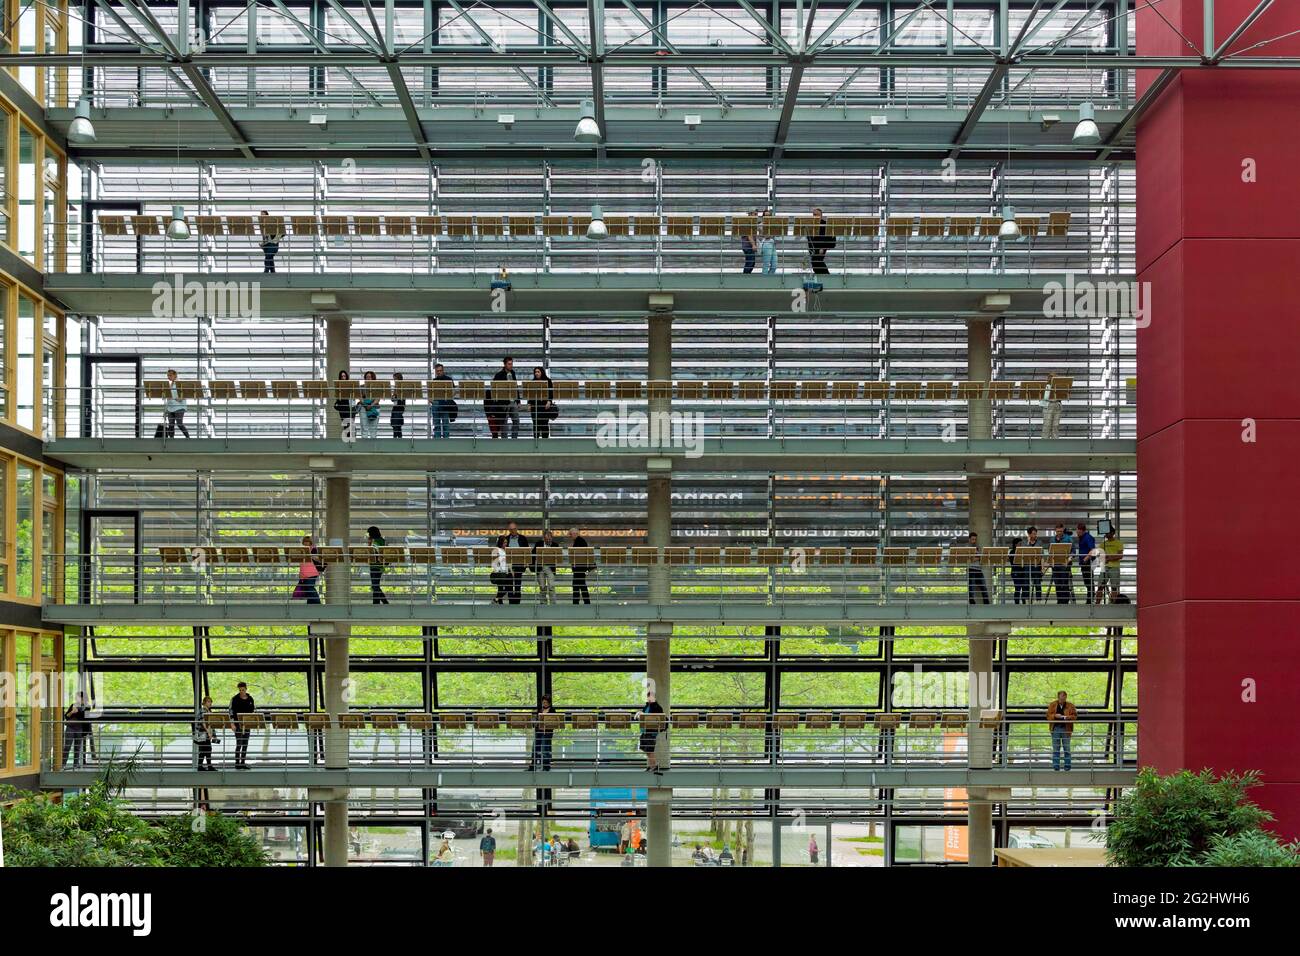 Université de photojournalisme et de photographie documentaire, Hanovre, Allemagne Banque D'Images